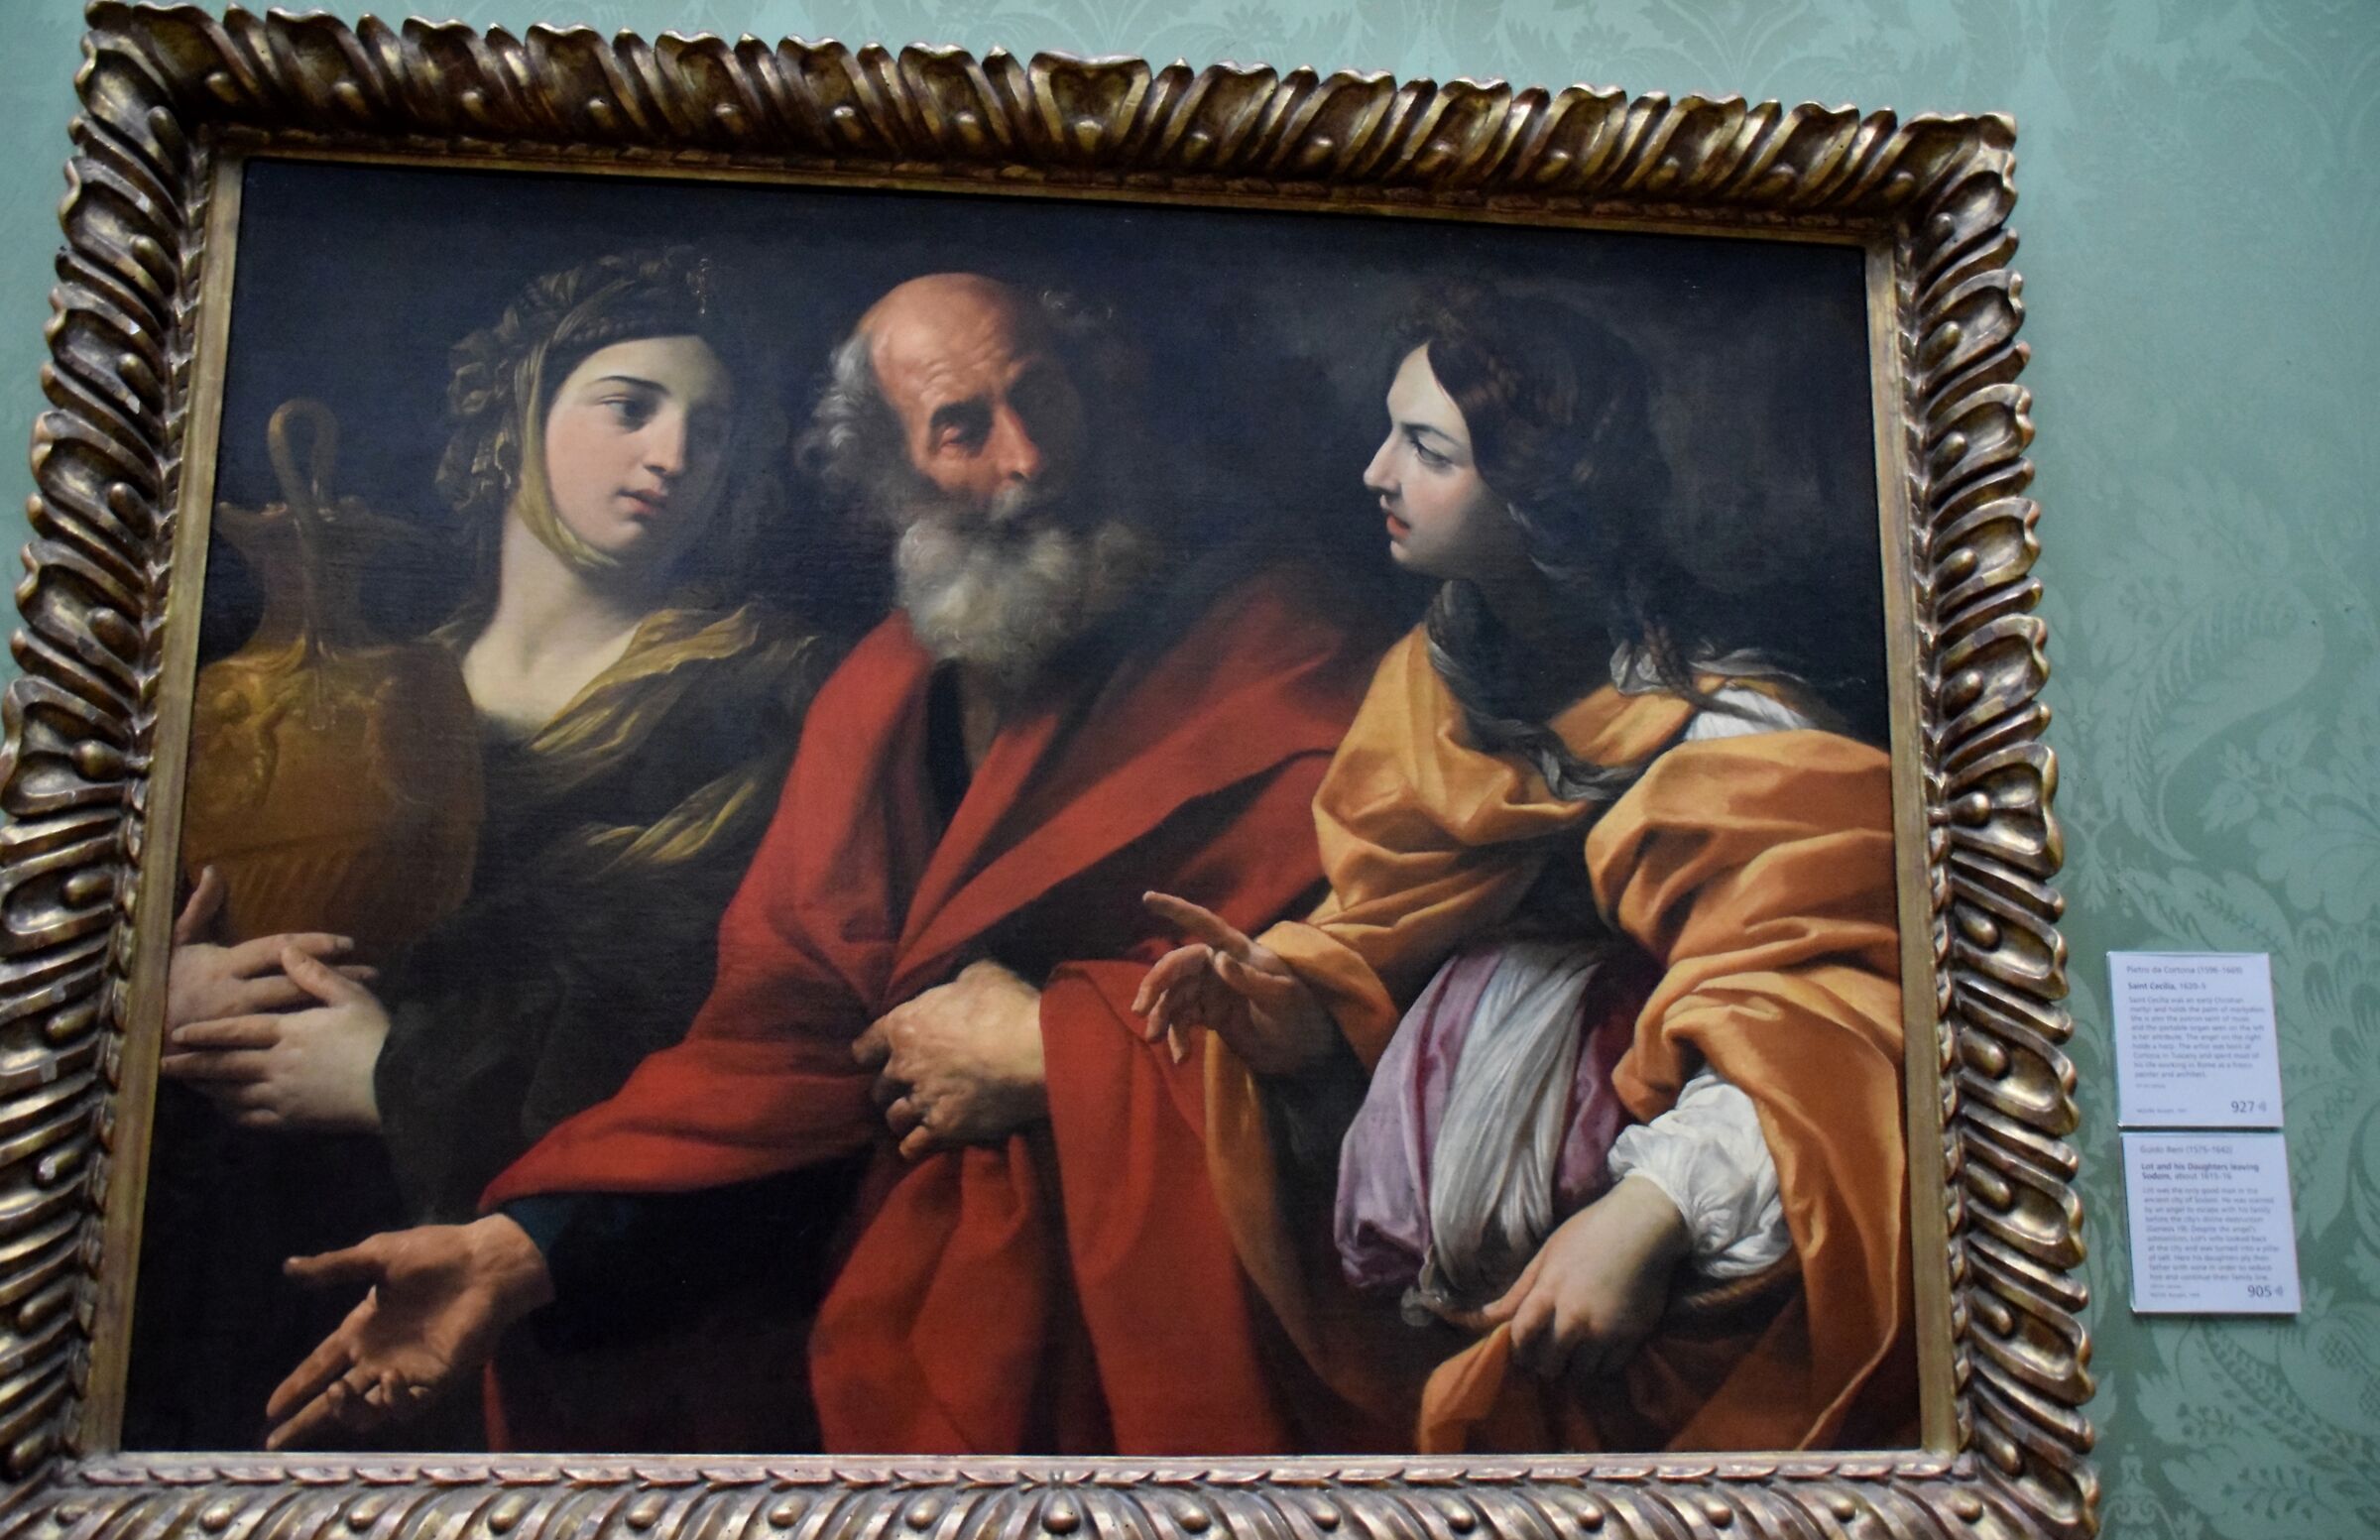 Nationa Gallery - Guido Reni "Lot e le sue figlie"...